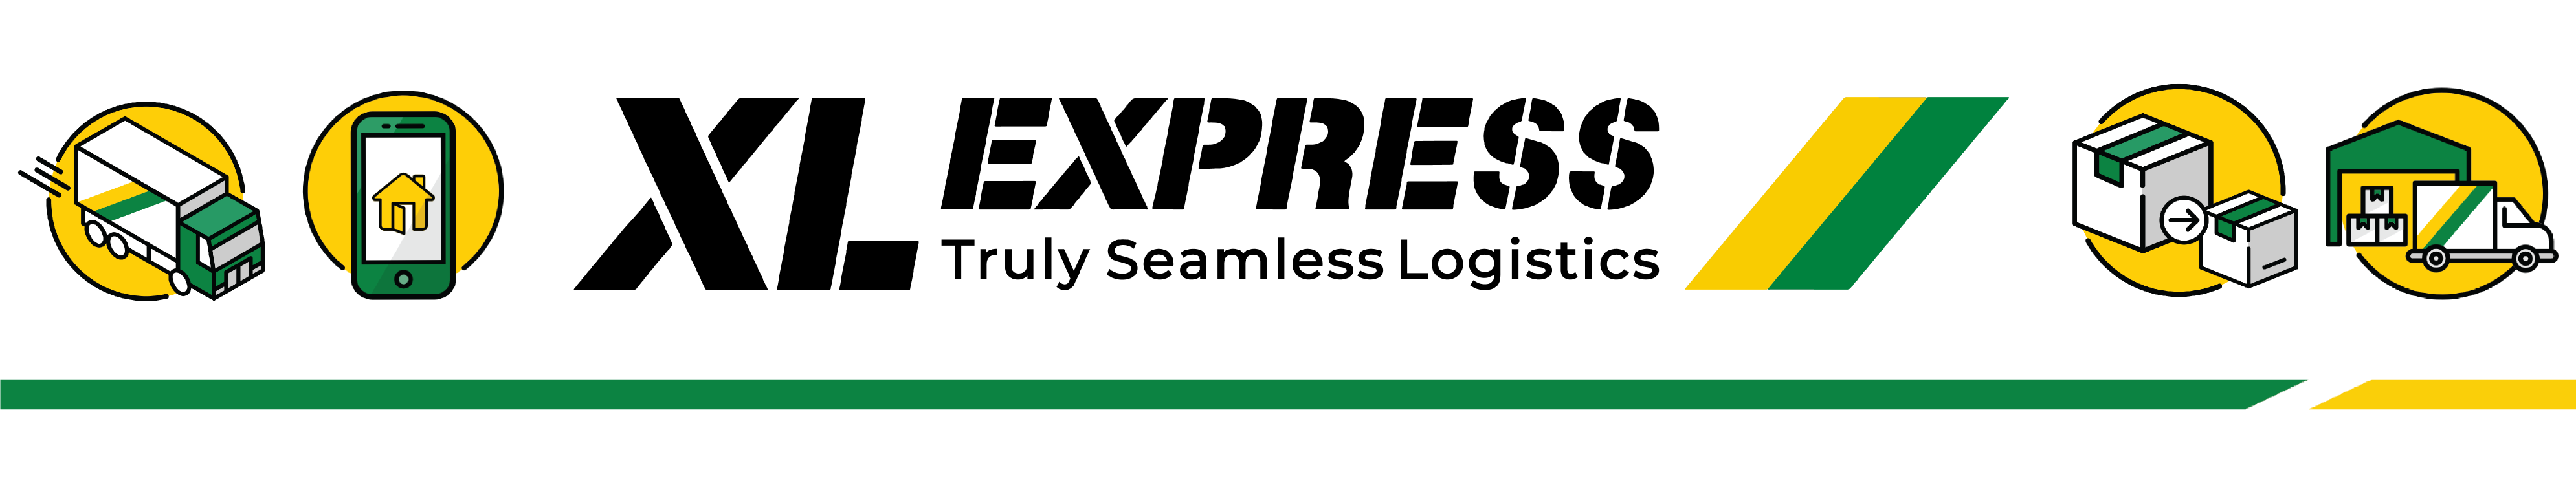 XL Express (@XLExpressAUS) / X